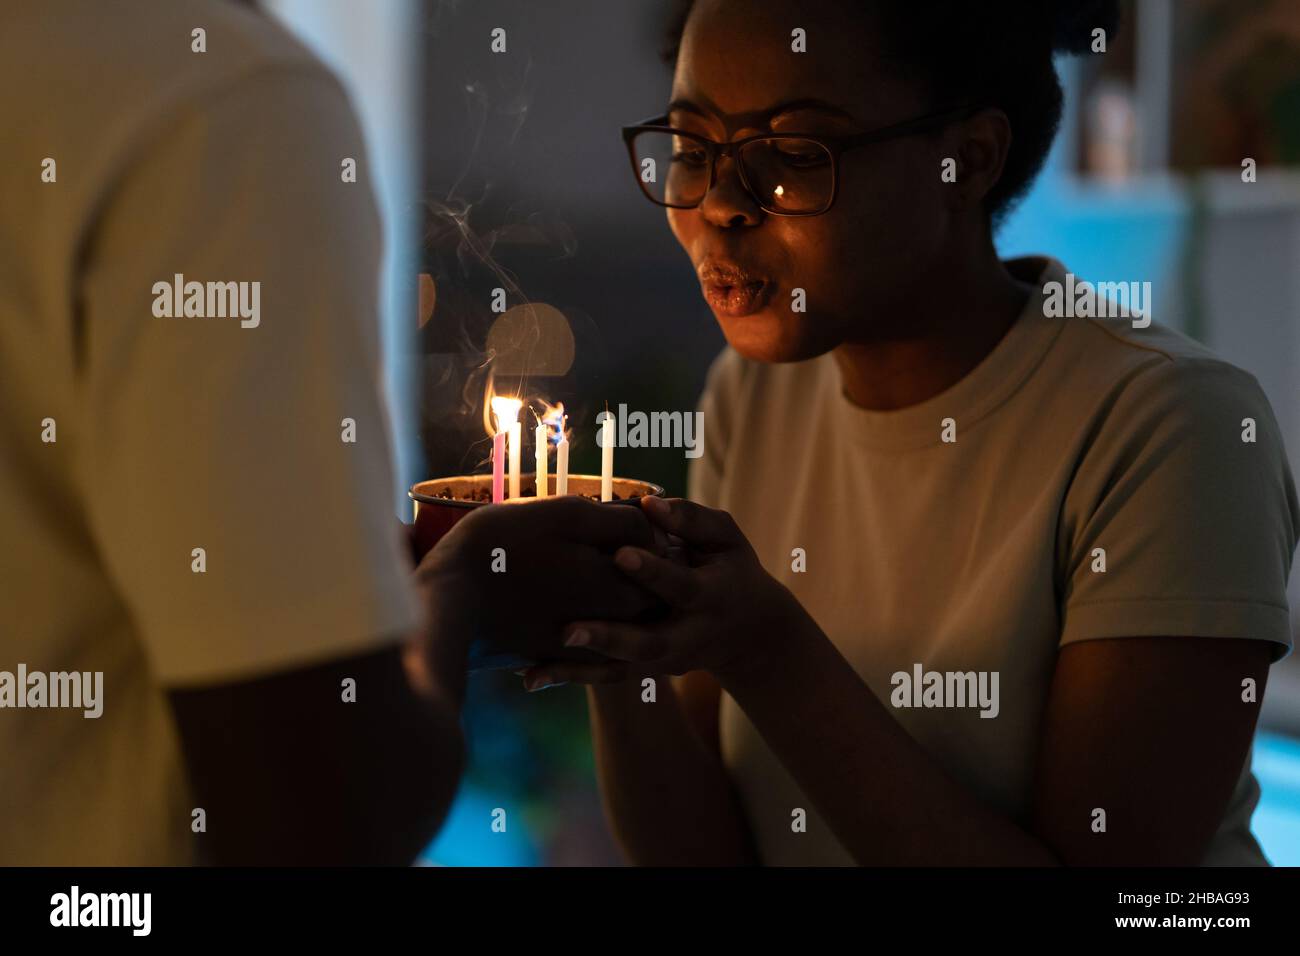 Jeune femme africaine heureuse soufflant des bougies sur un gâteau cuit par un mari bien-aimé pour l'anniversaire Banque D'Images